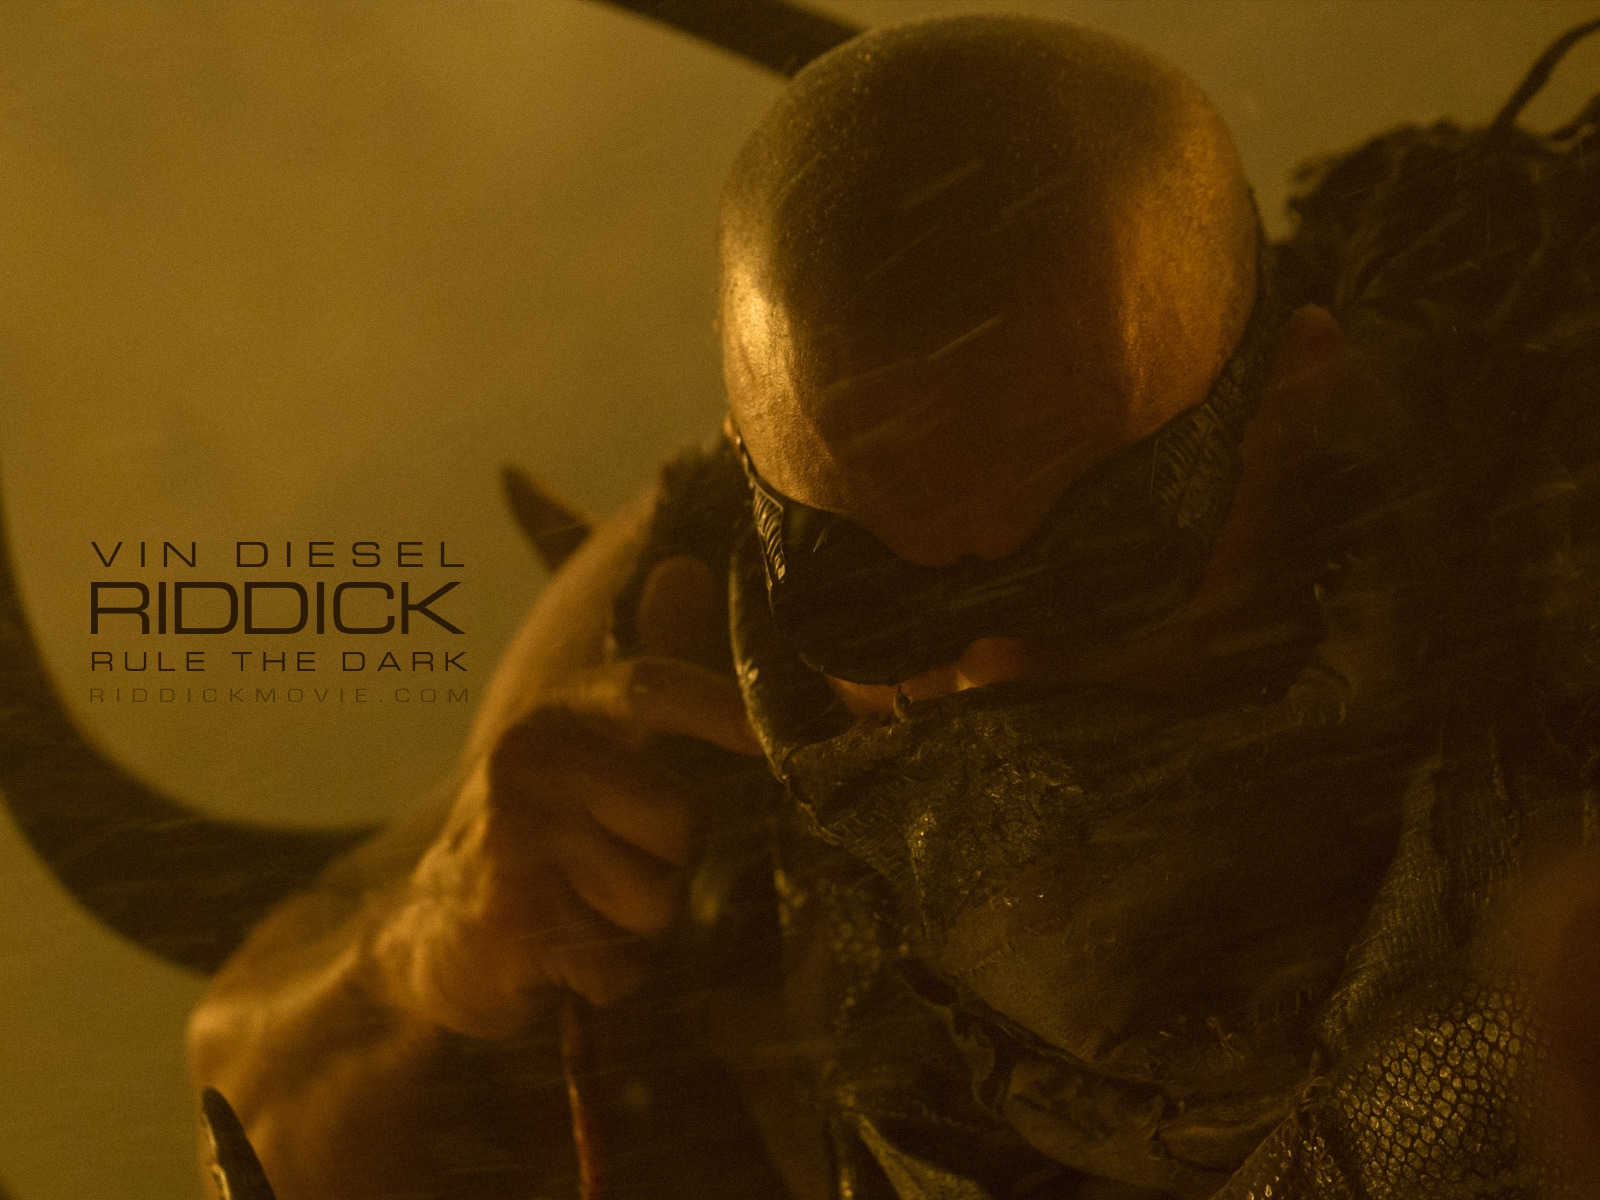 Vin Diesel Riddick for 1600 x 1200 resolution